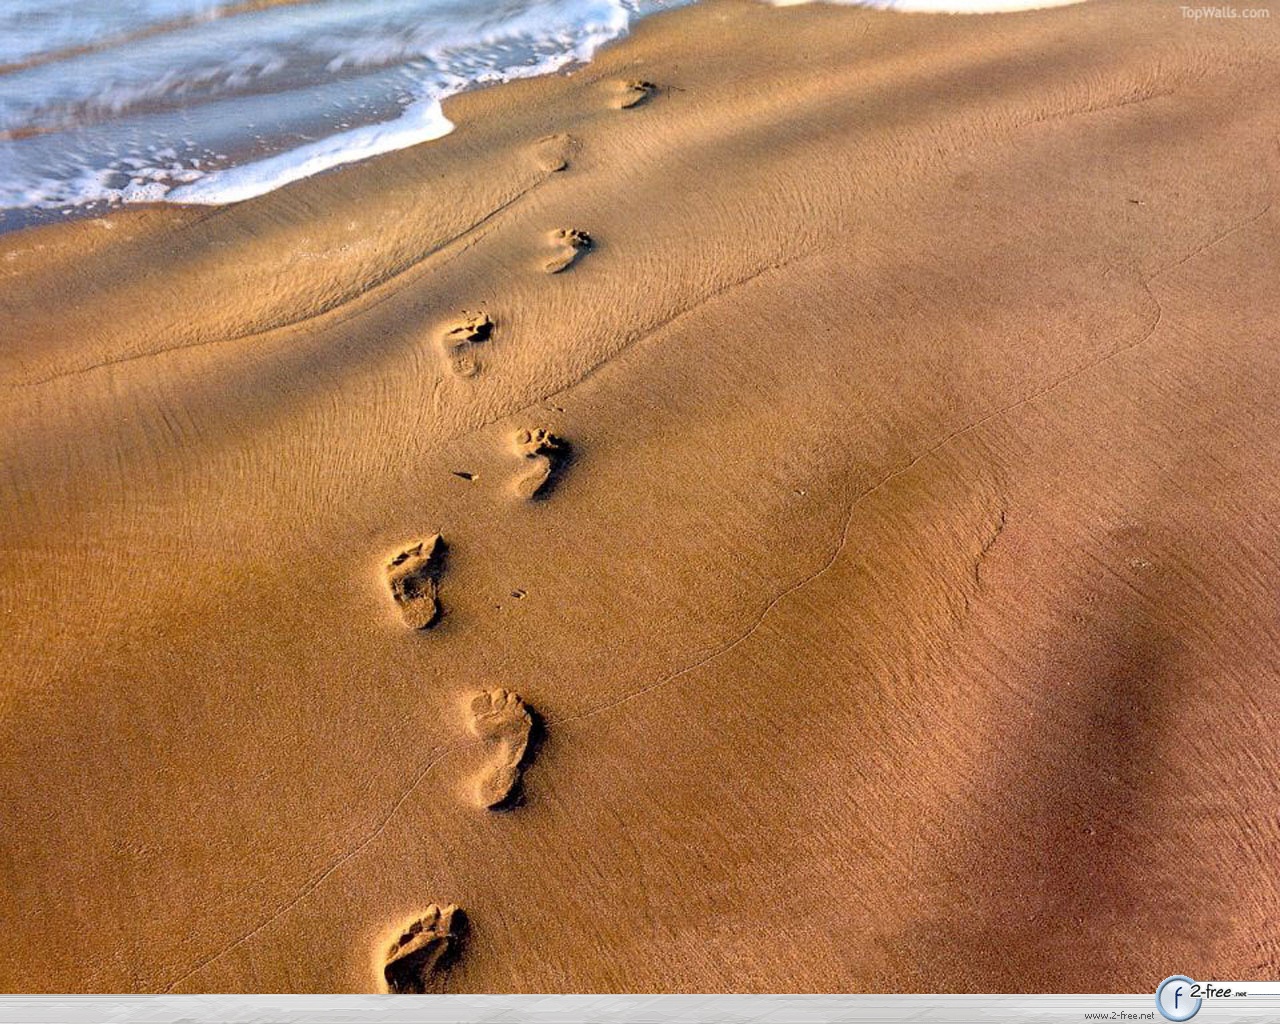 footprints-in-sand1.jpg